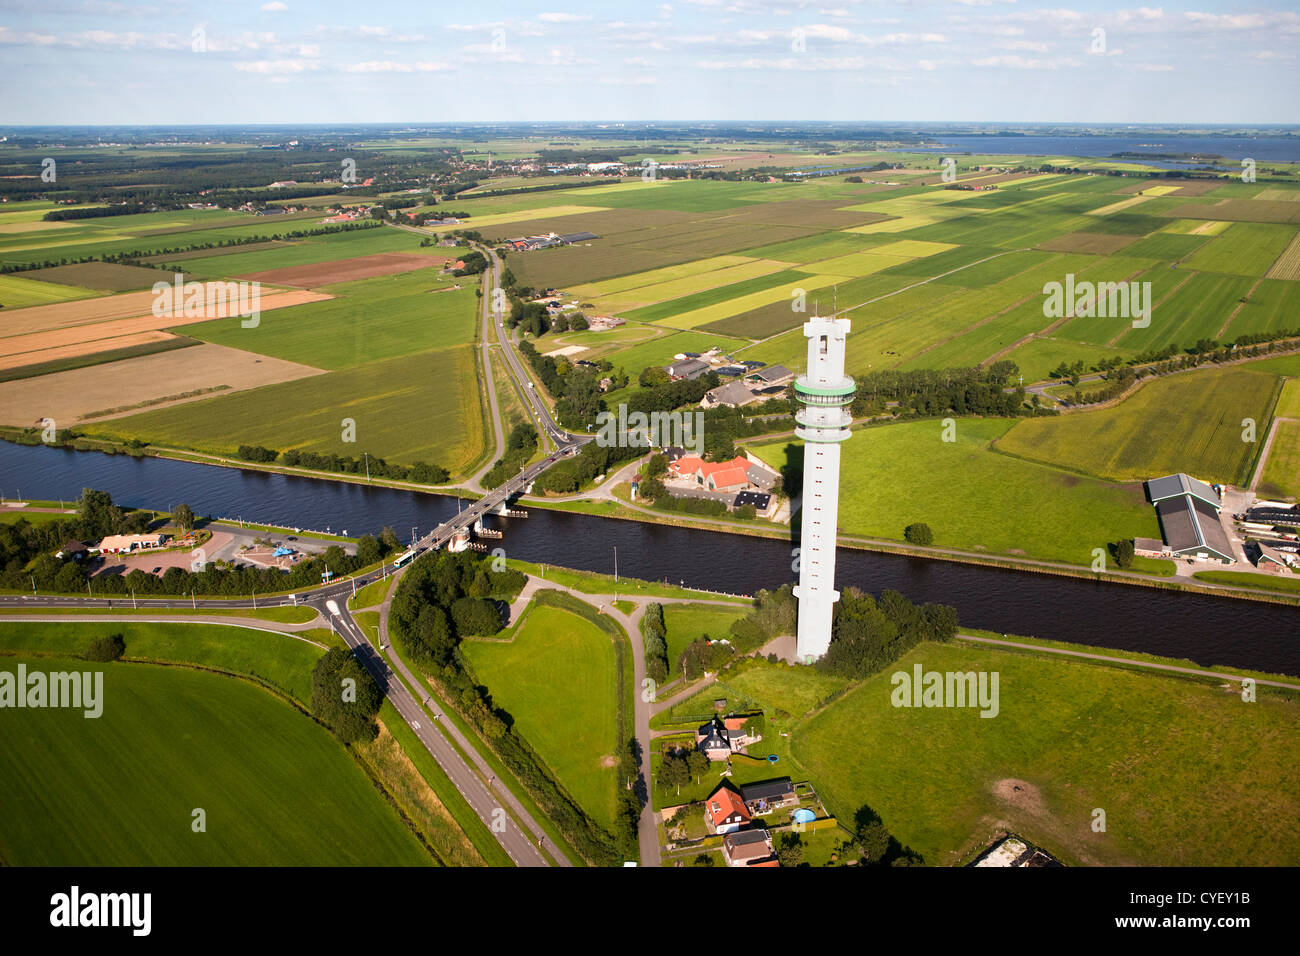 Den Niederlanden, Spannenburg. Luft. Betriebe, Ackerland und Fernsehturm. Stockfoto